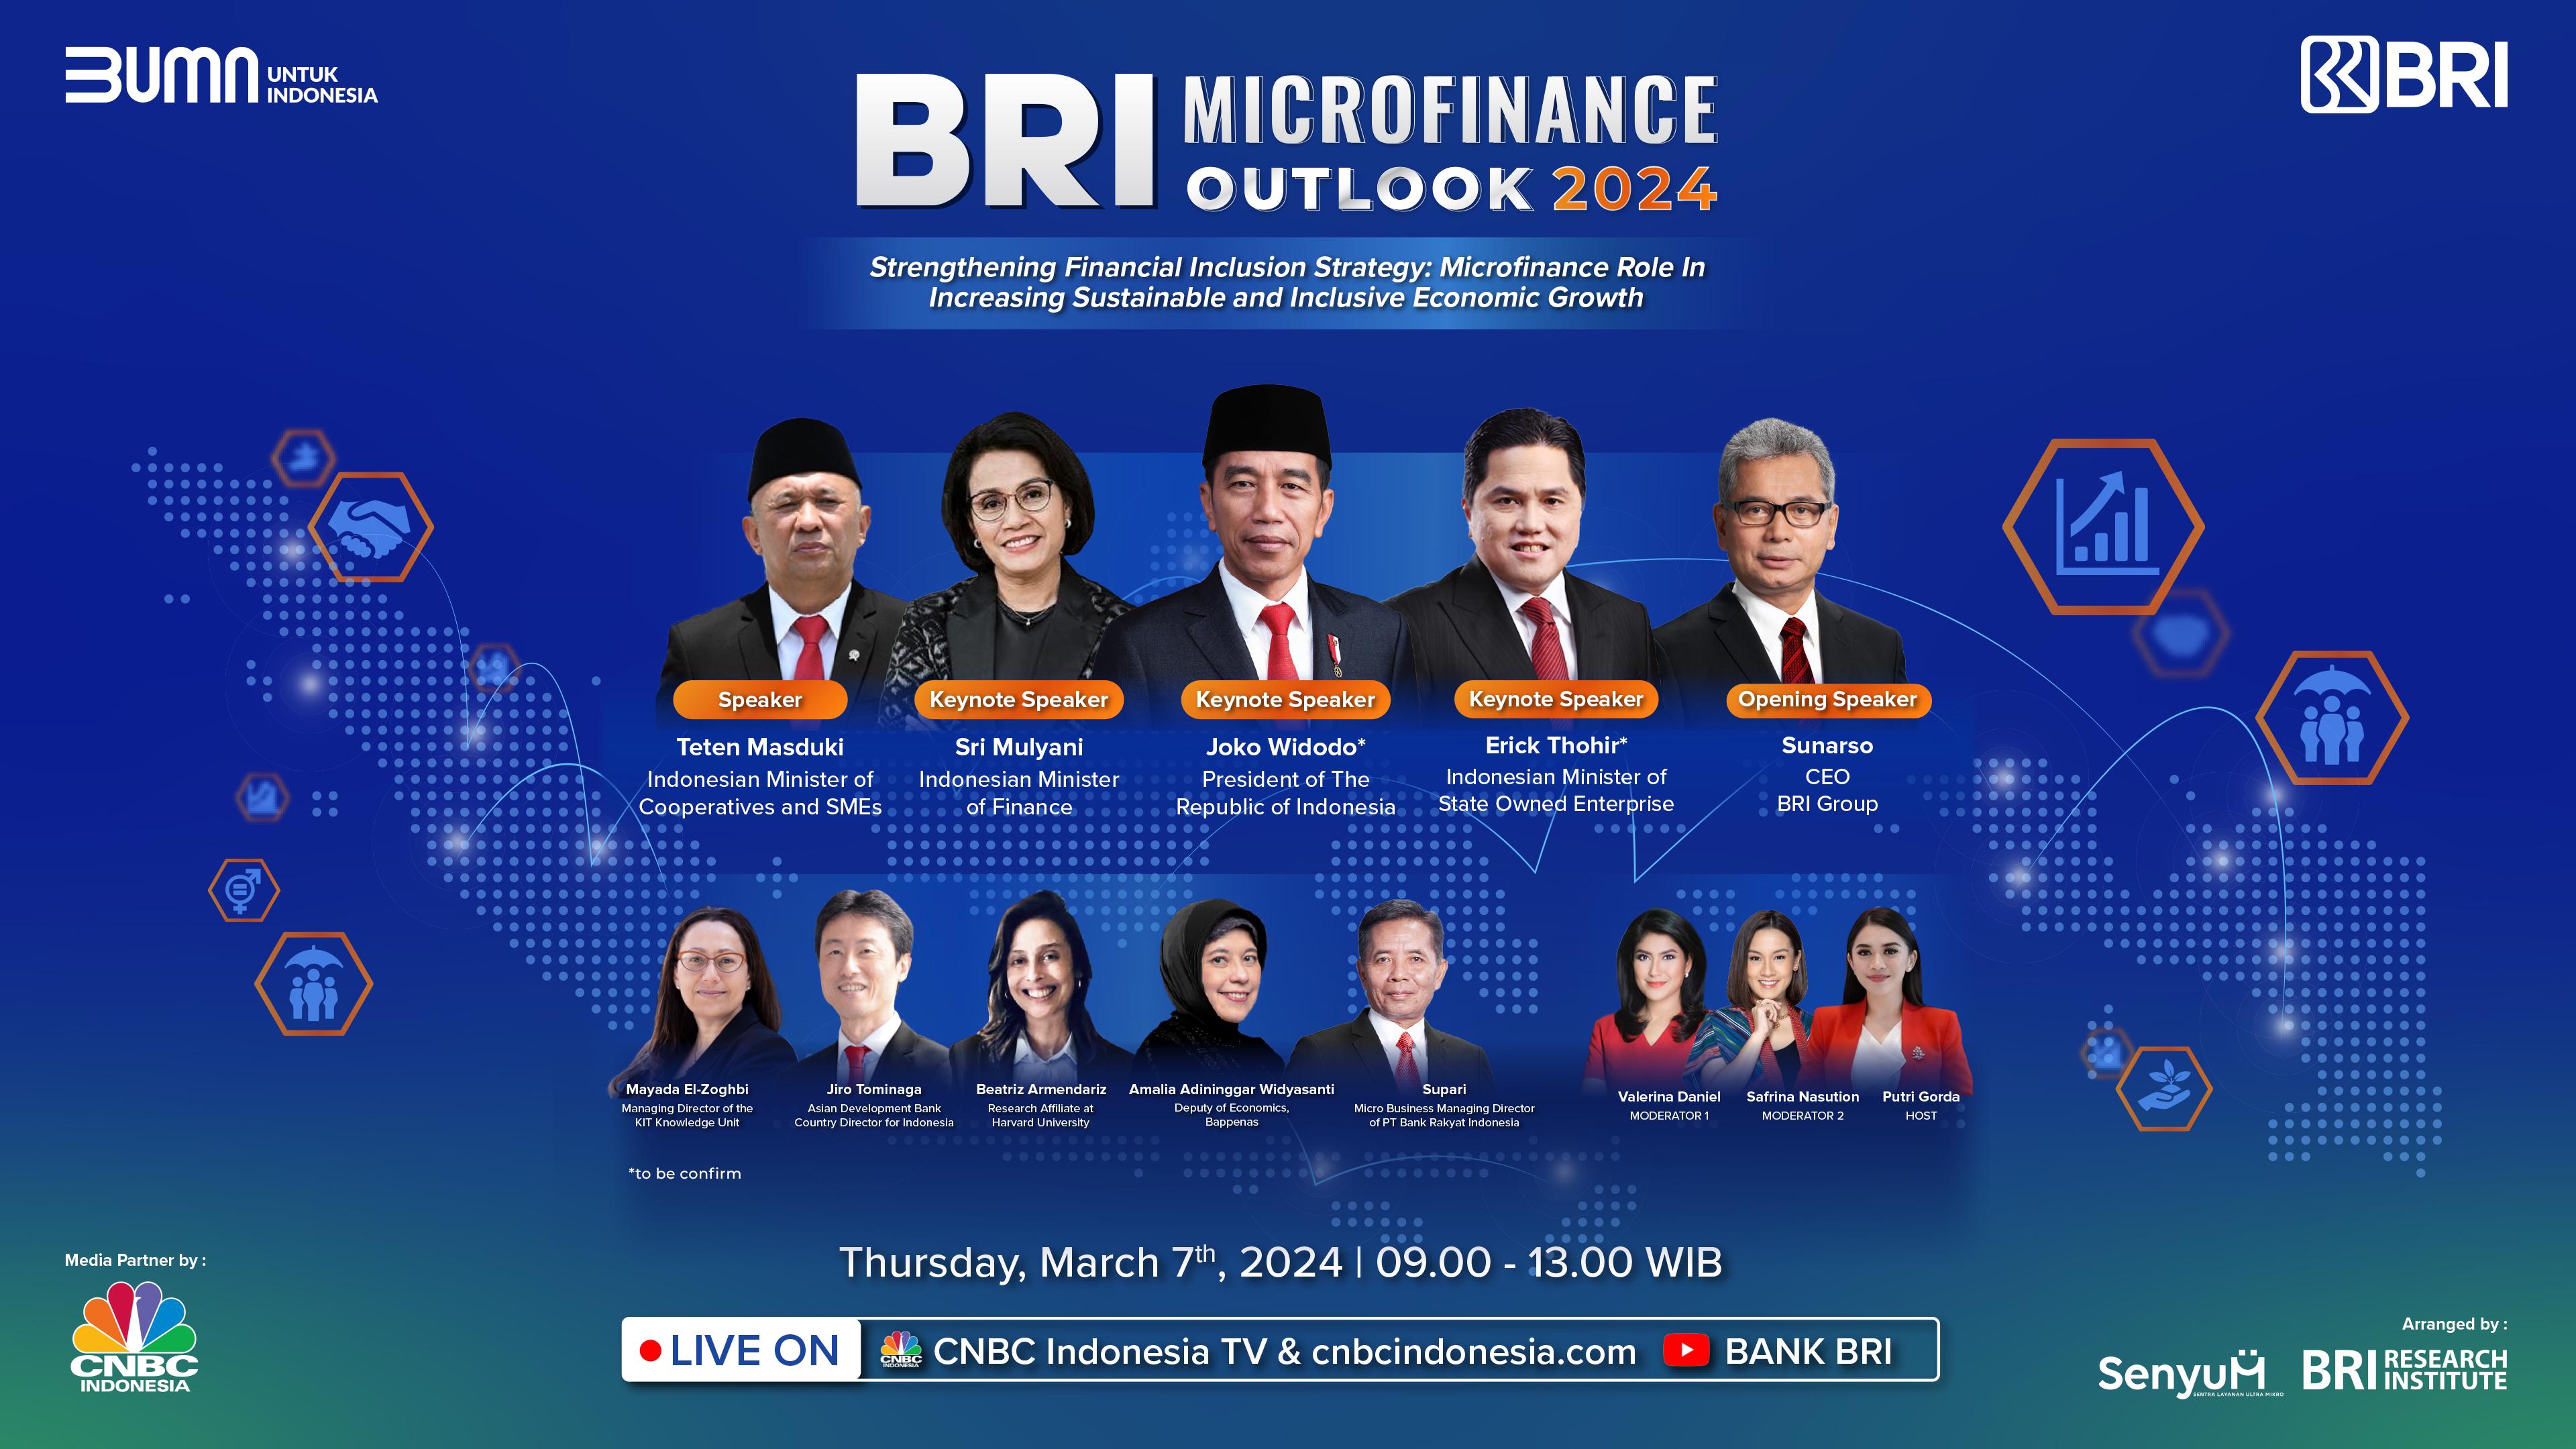 BRI Microfinance Outlook 2024 Siap Digelar, Angkat Strategi Memperkuat Inklusi Keuangan untuk Pertumbuhan Ekonomi Berkelanjutan